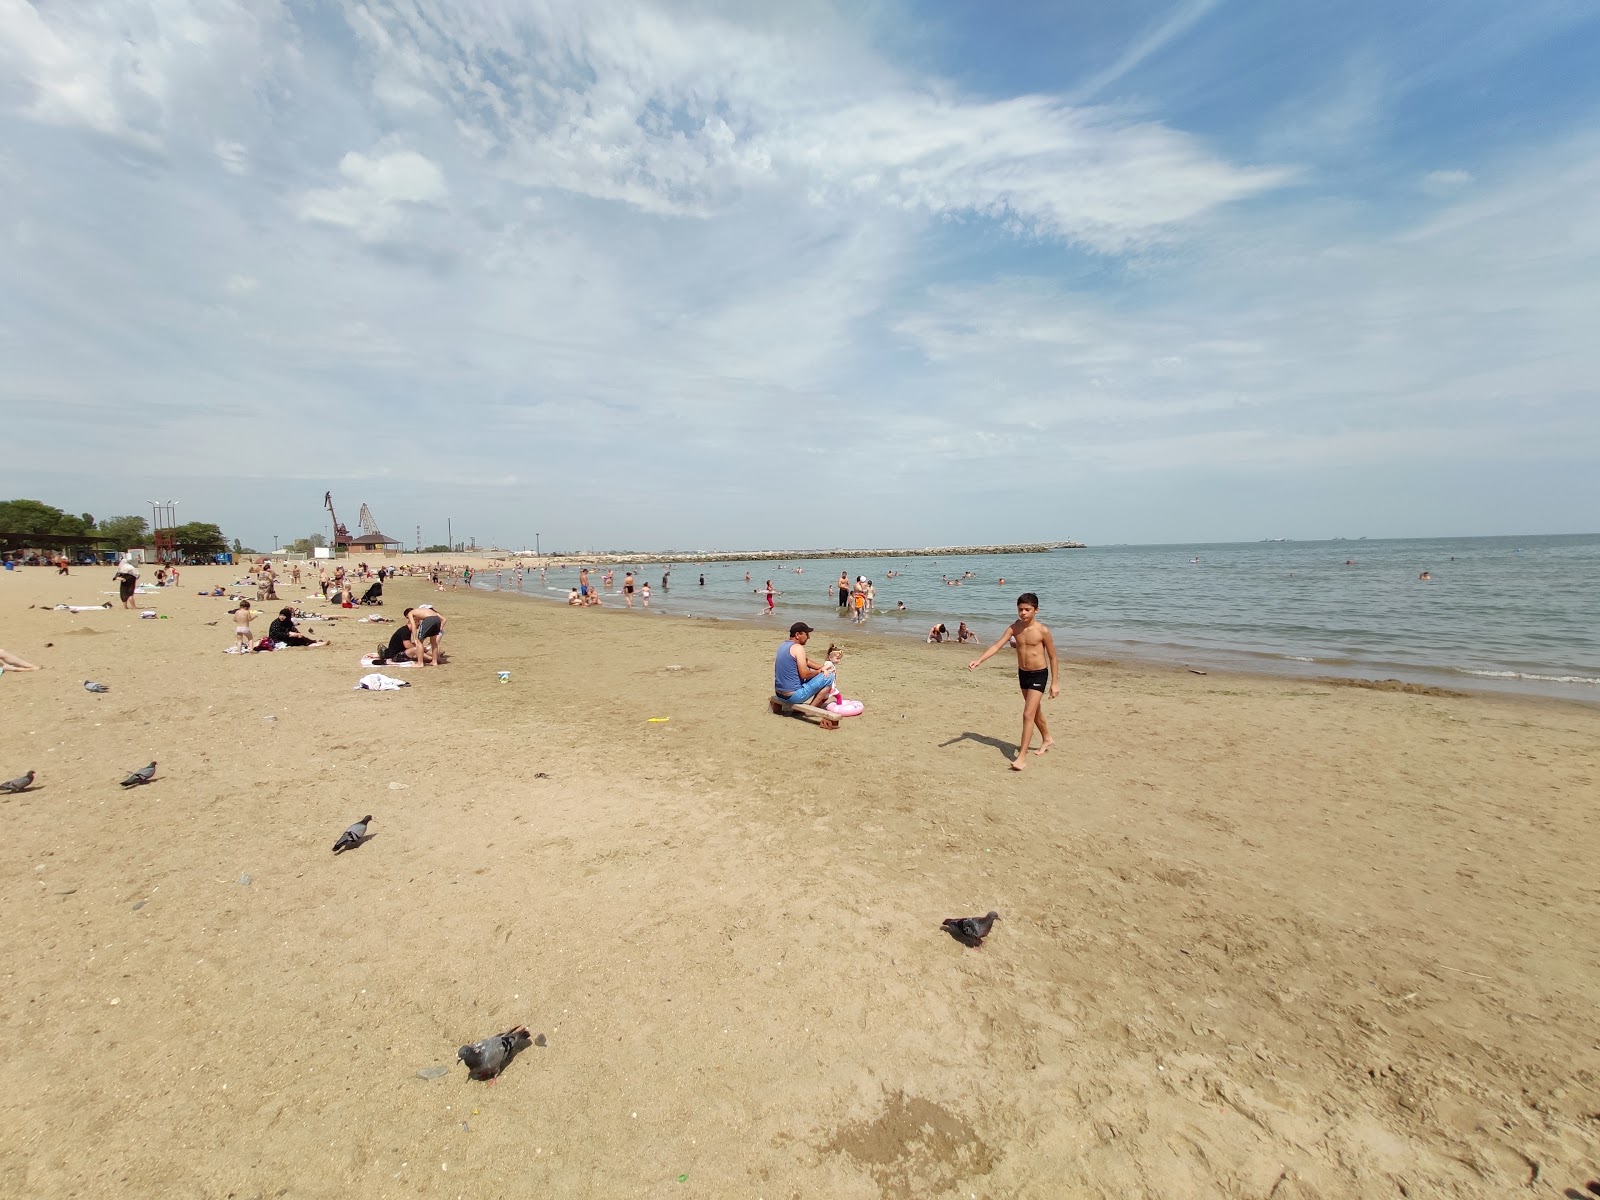 Plazh Berezka'in fotoğrafı hafif ince çakıl taş yüzey ile